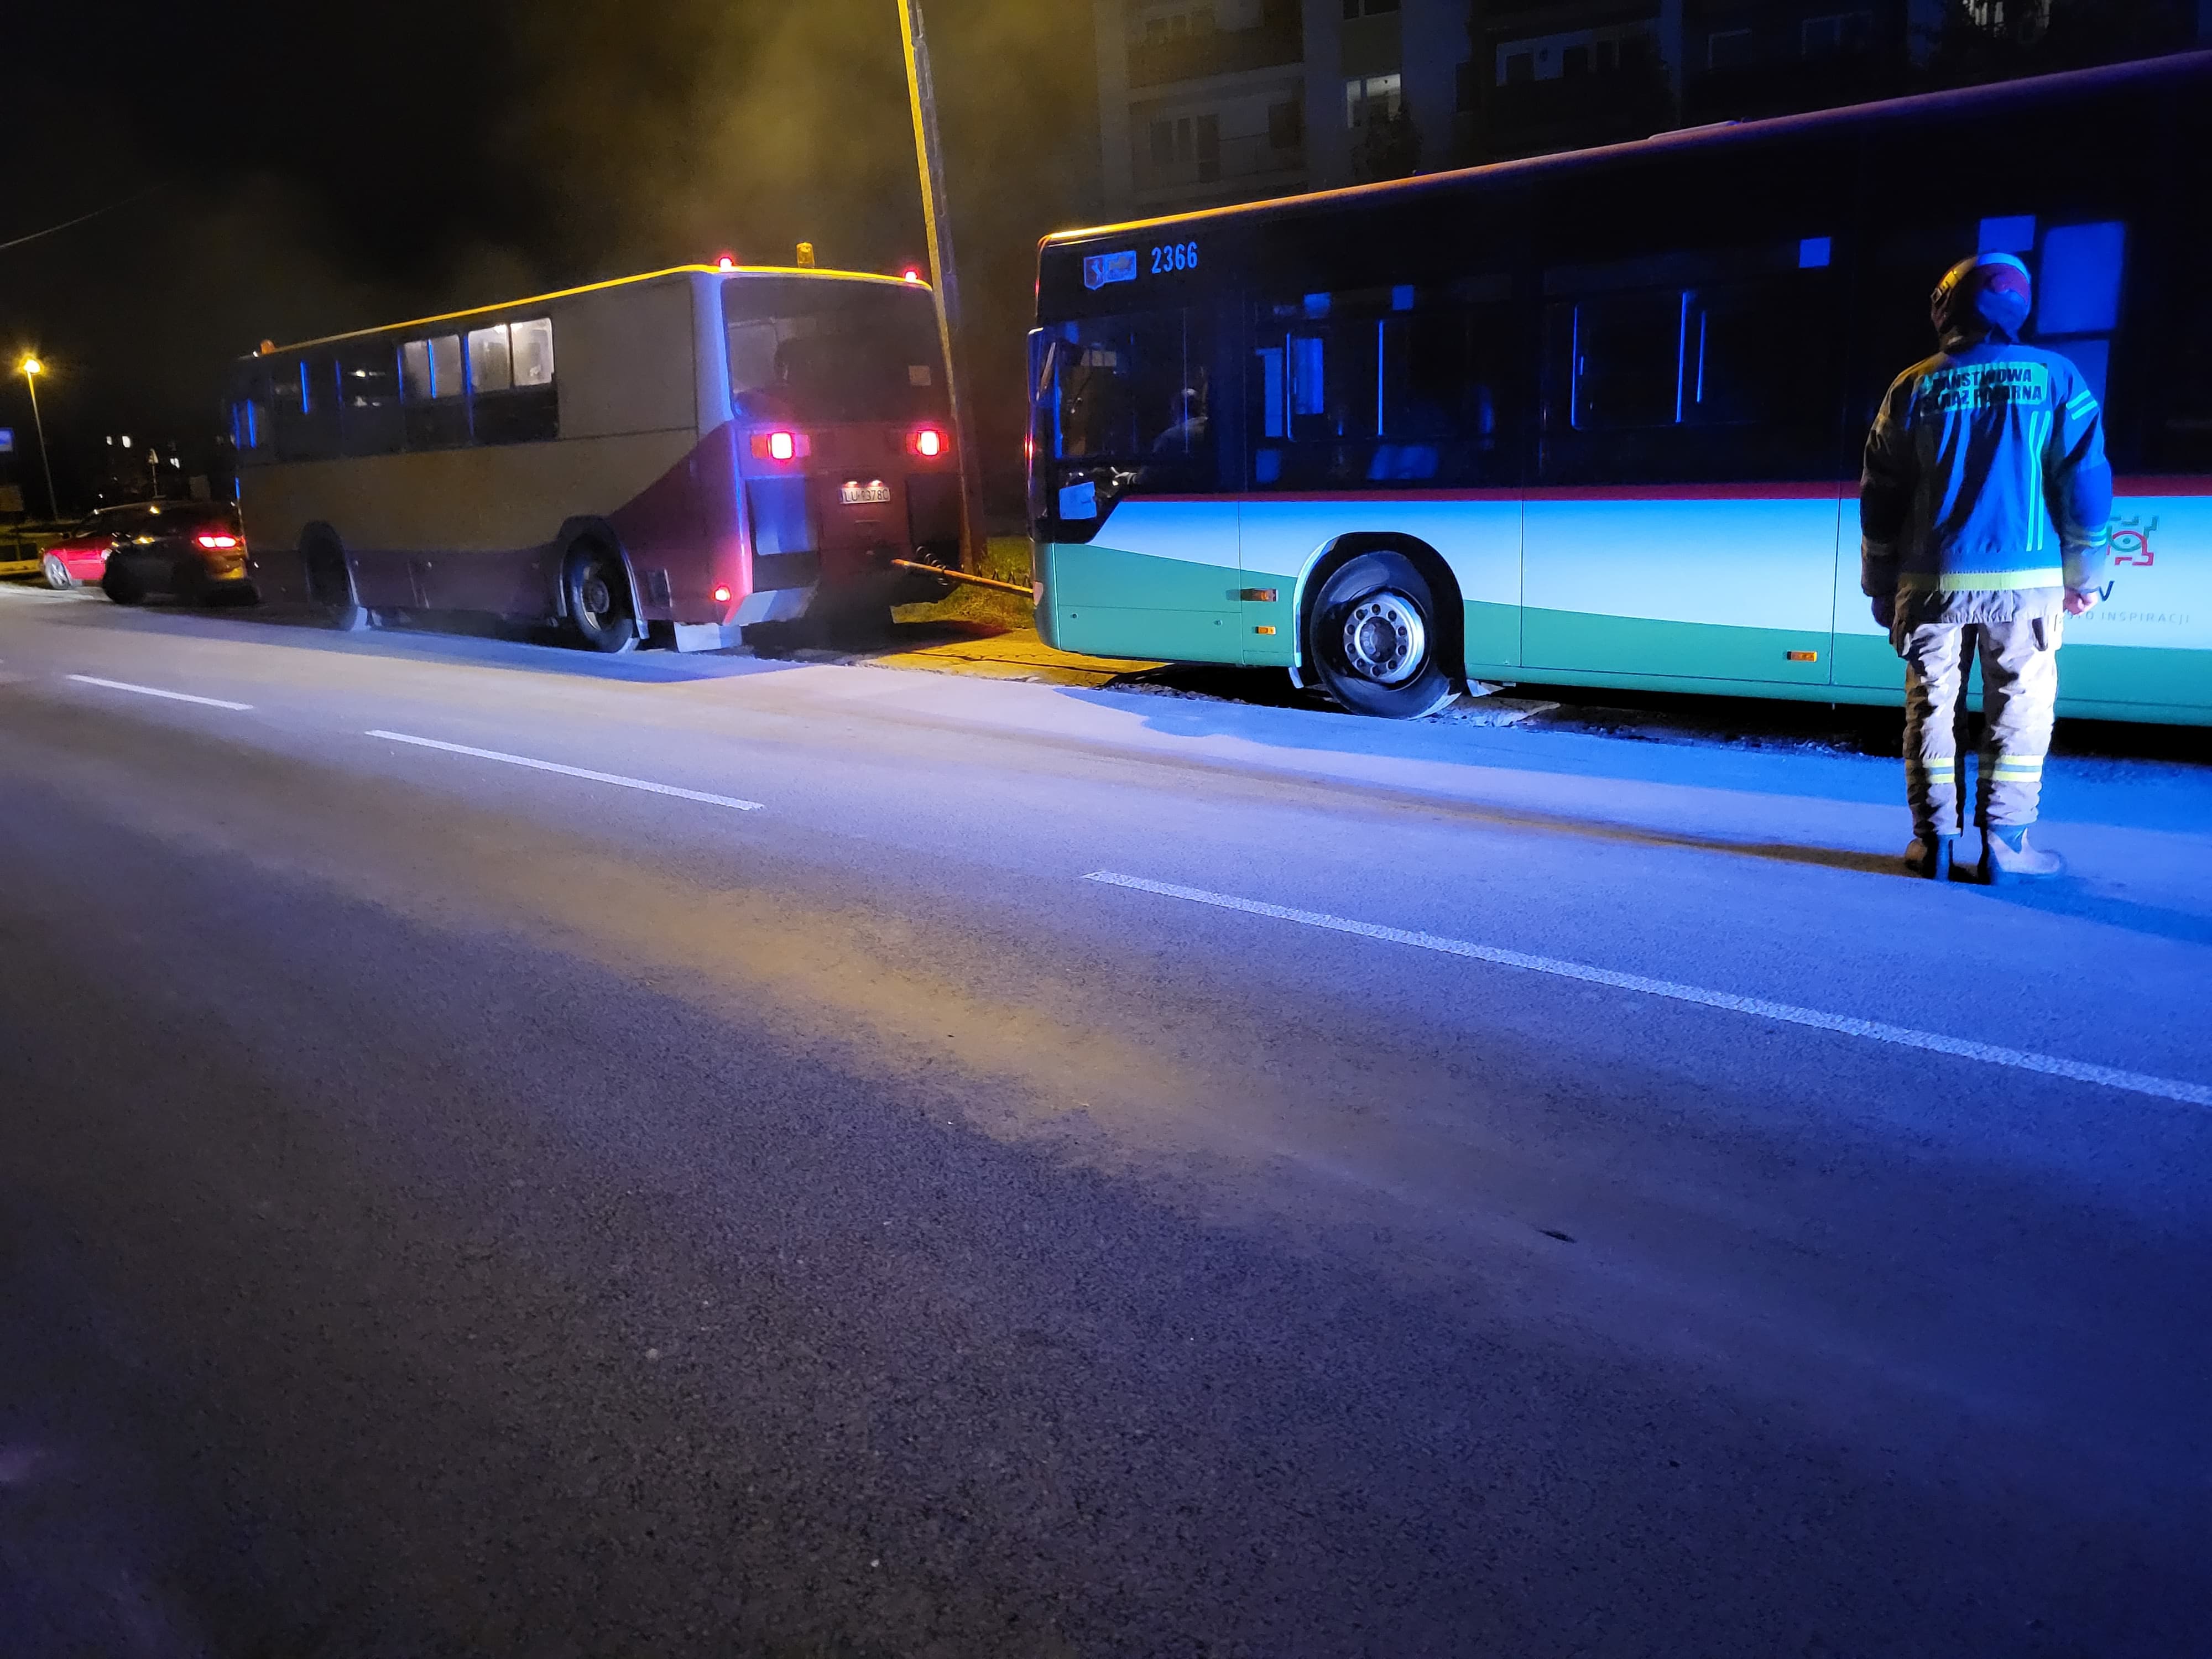 Autobus wjechał w wyrwę w jezdni, zaczęło wyciekać paliwo. Na miejscu pracują strażacy (zdjęcia)